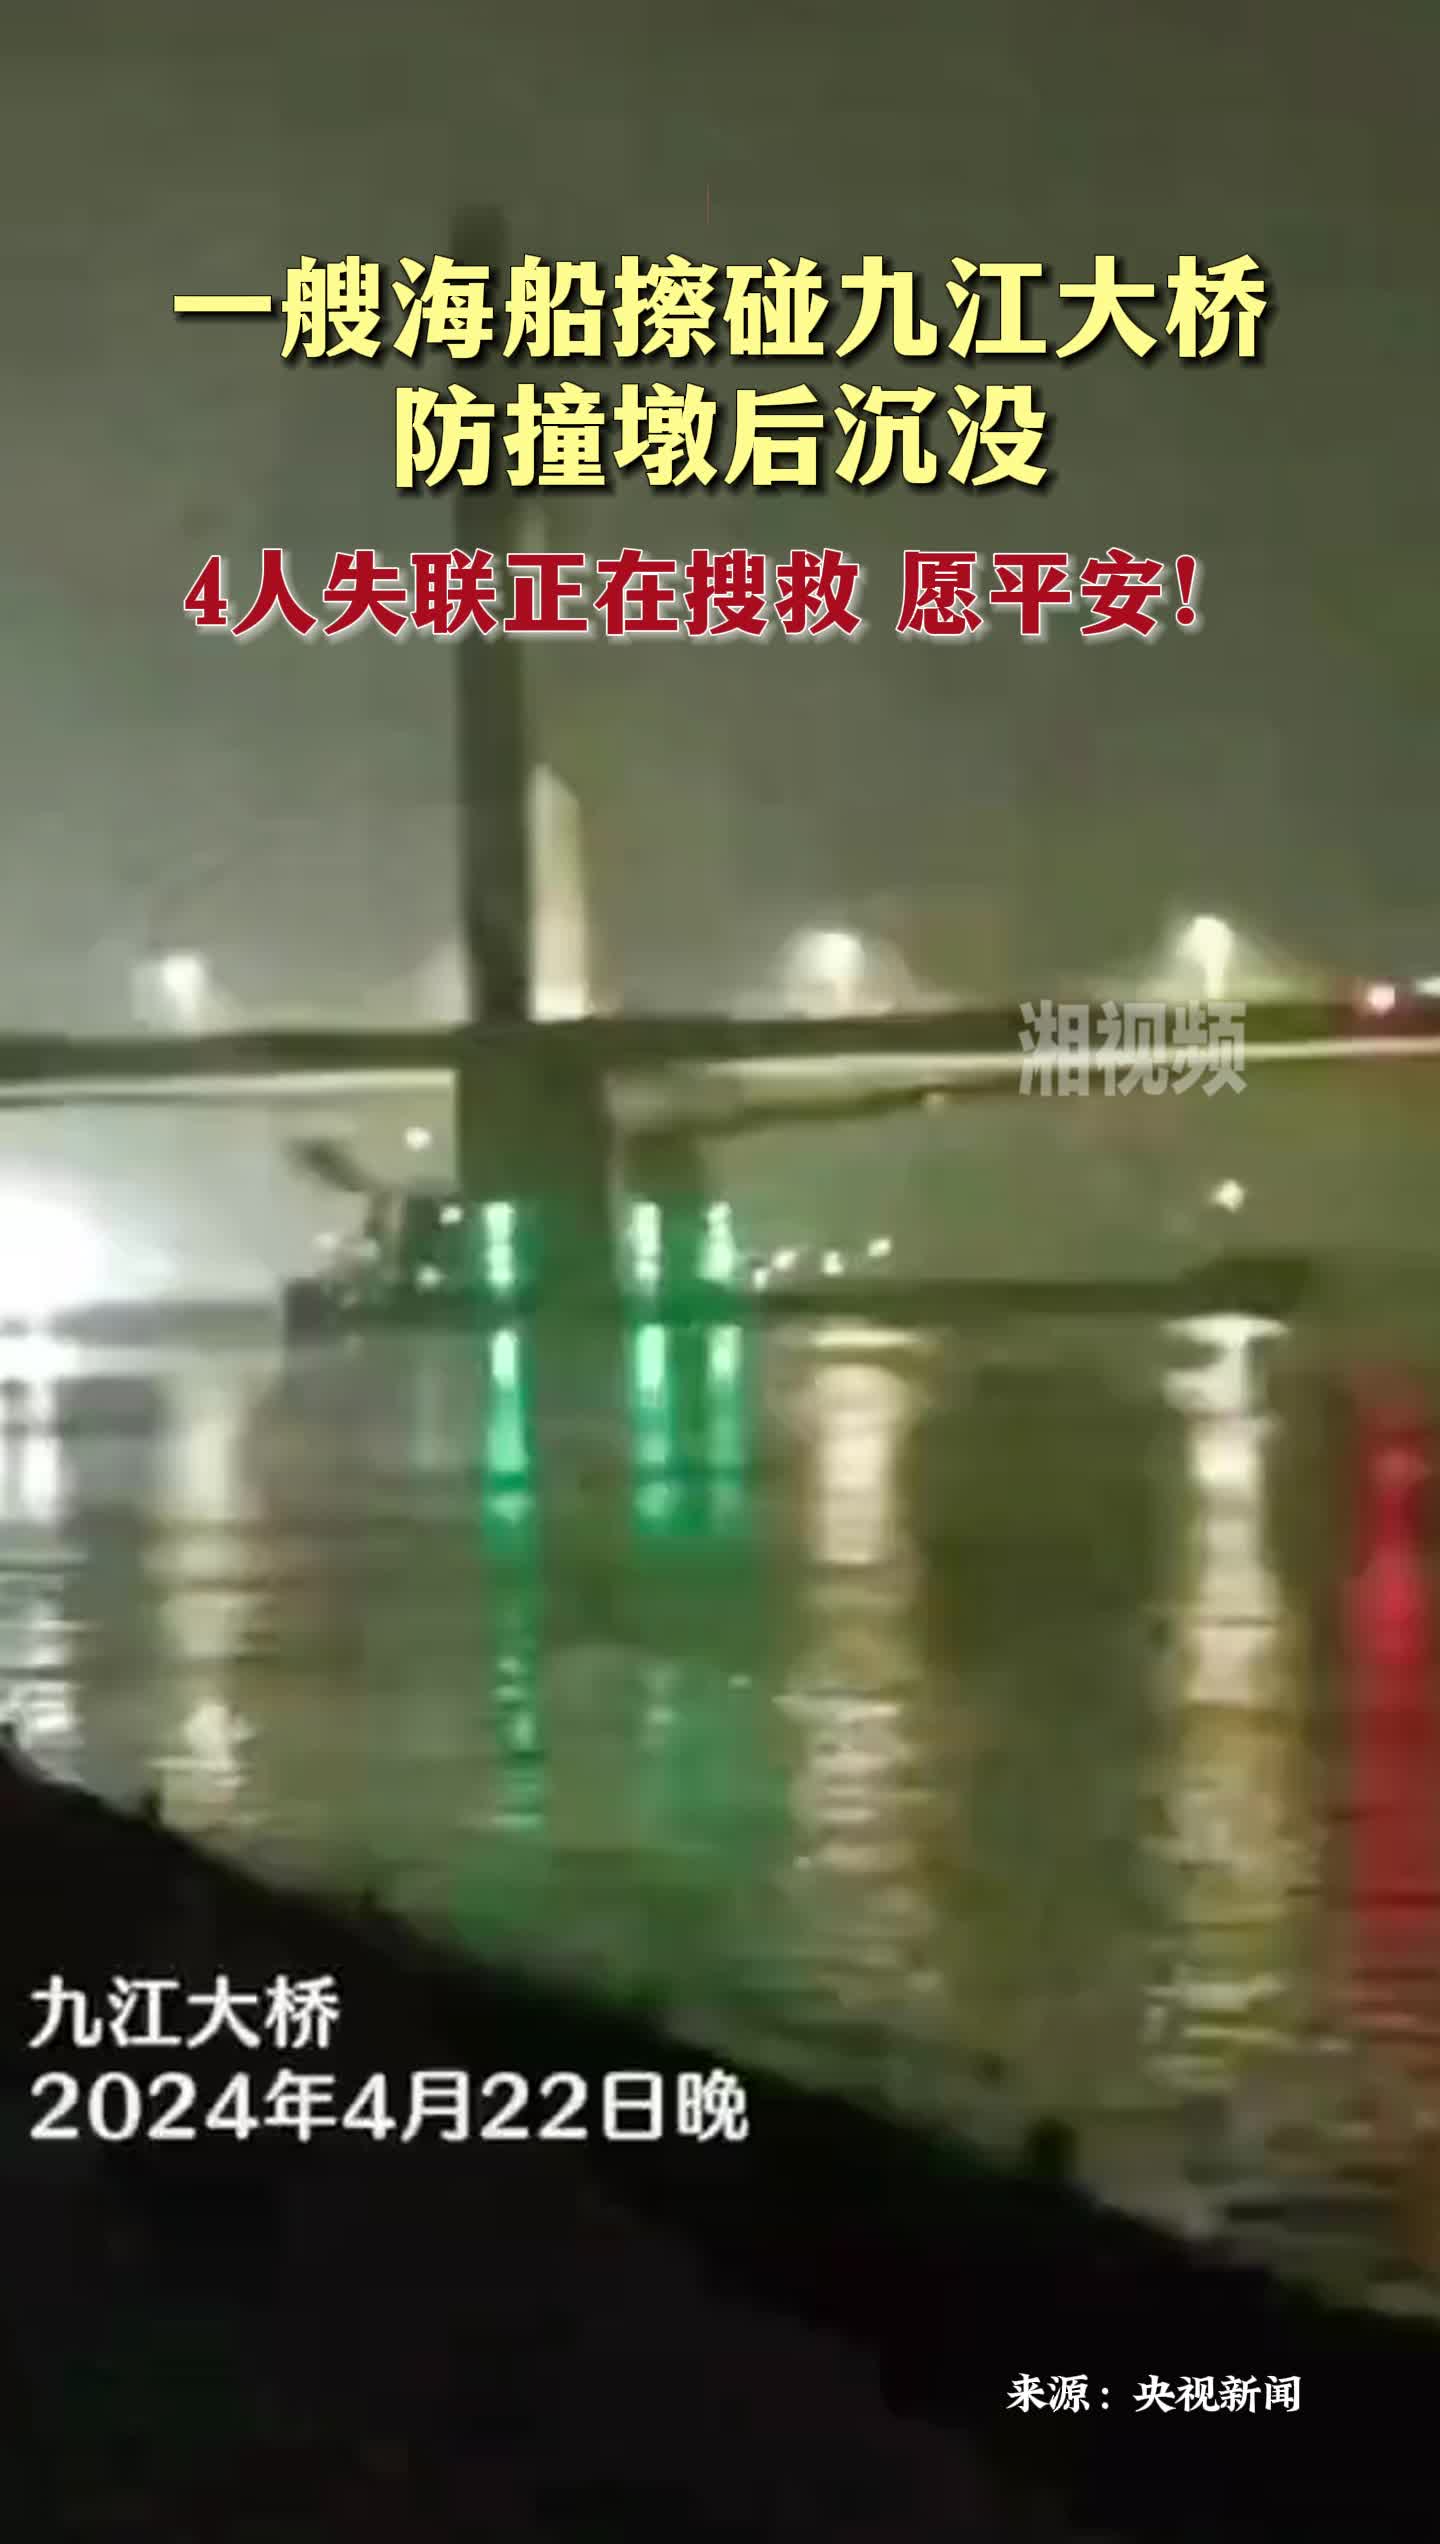 海船擦碰九江大桥防撞墩后沉没 4人失联正在搜救